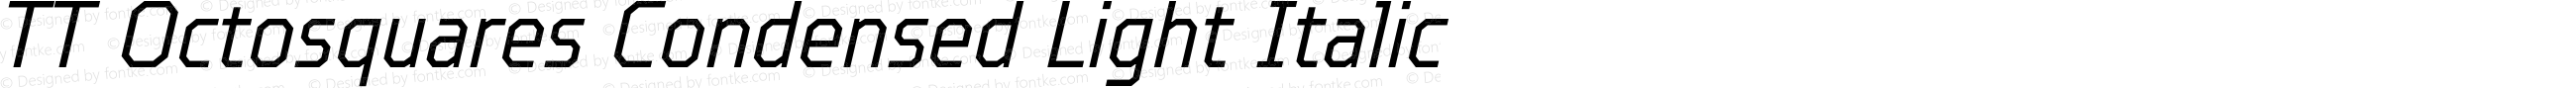 TT Octosquares Condensed Light Italic